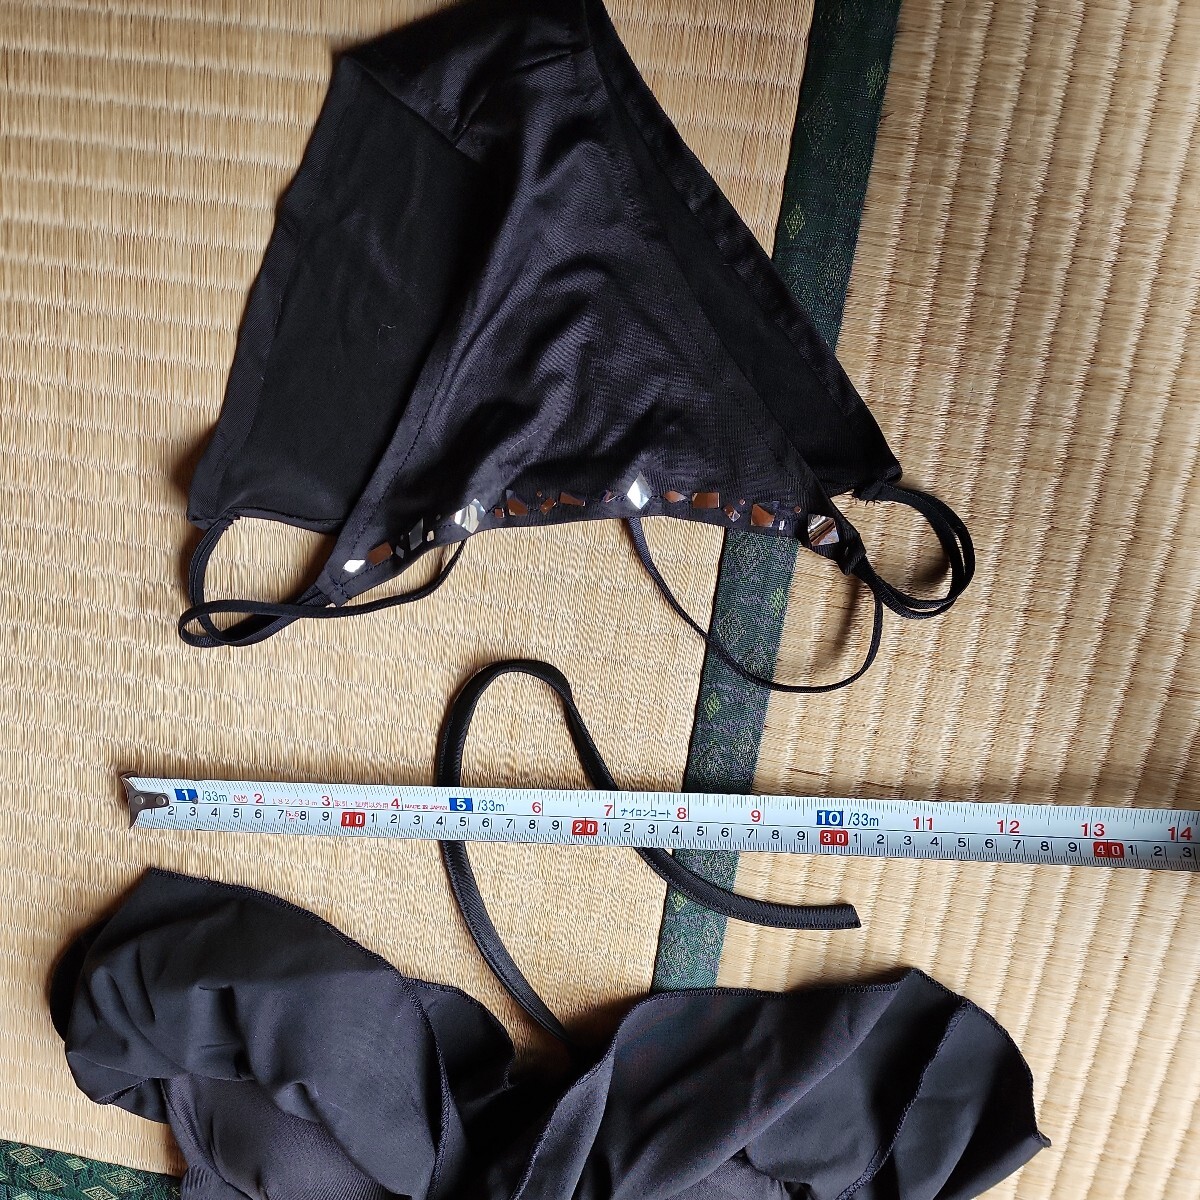  лошадь . Maruzen лыжи купальный костюм M размер такой же и т.п. один иен старт костюмированная игра .. чёрный . купальный костюм. узор. серебряный бумага . относительно. чай цвет длинный парик 